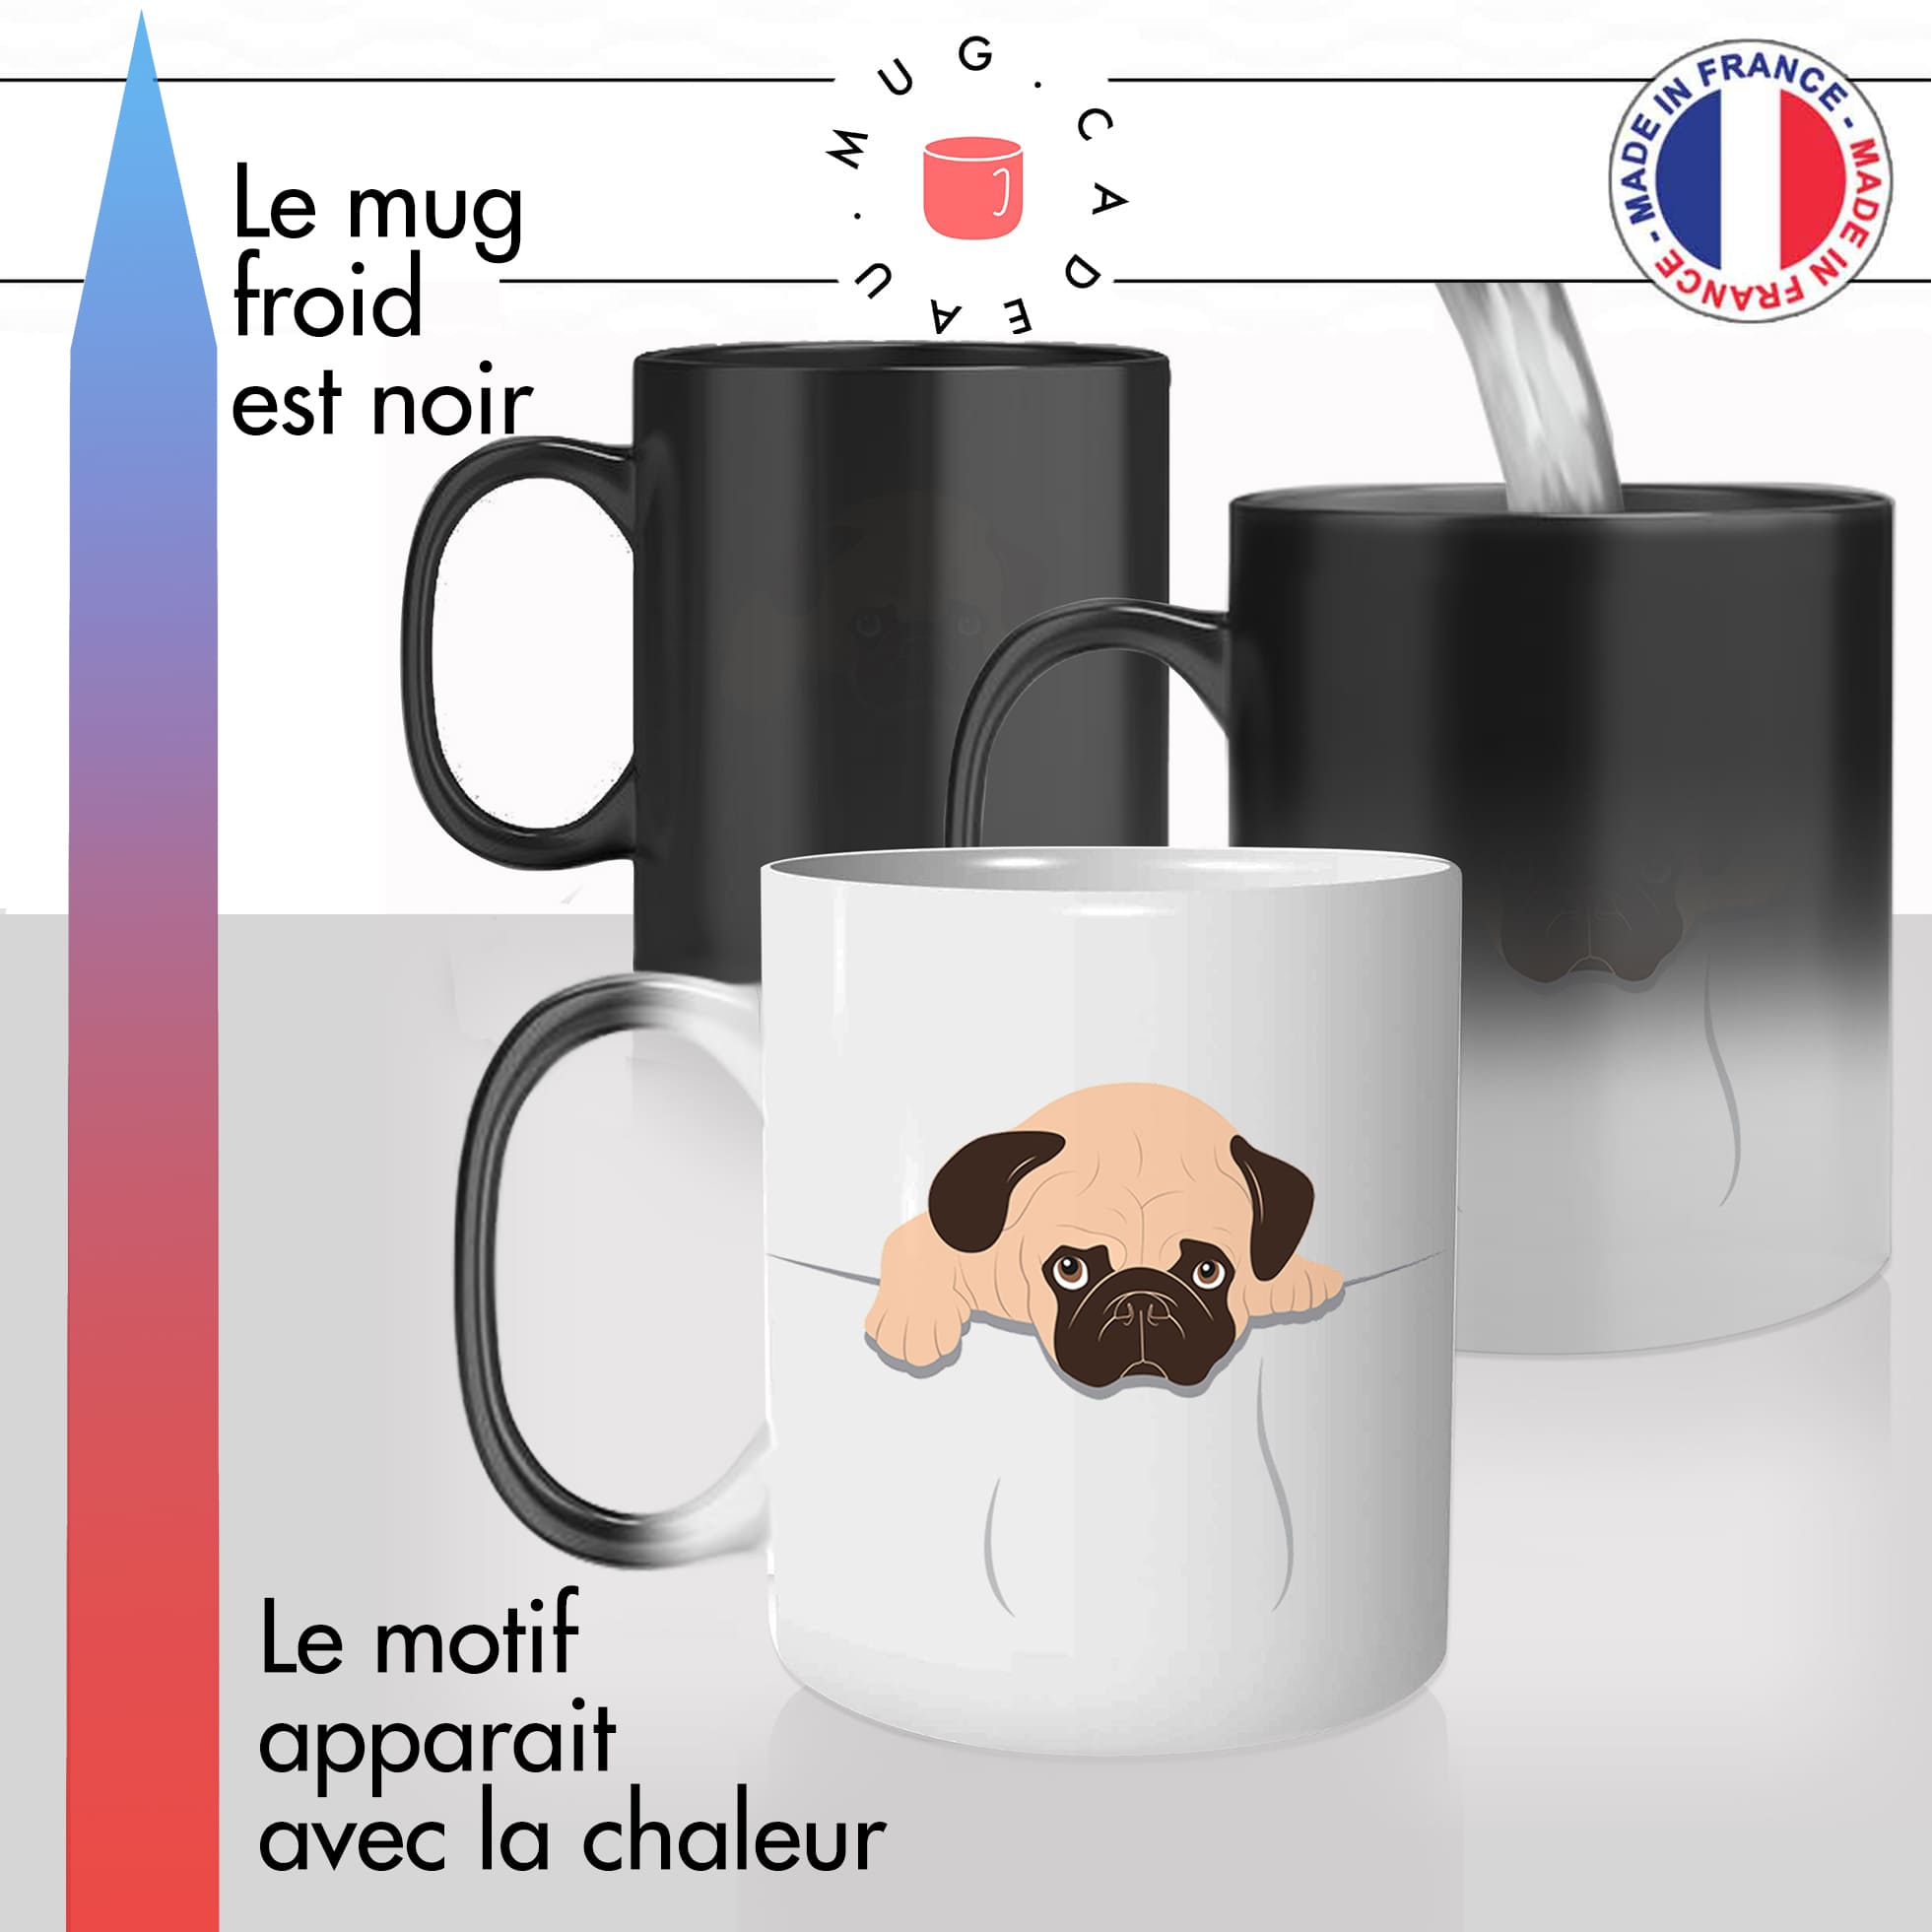 mug magique thermoreactif thermo chauffant chien bulledog francais poche couleur stylé original idée cadeau